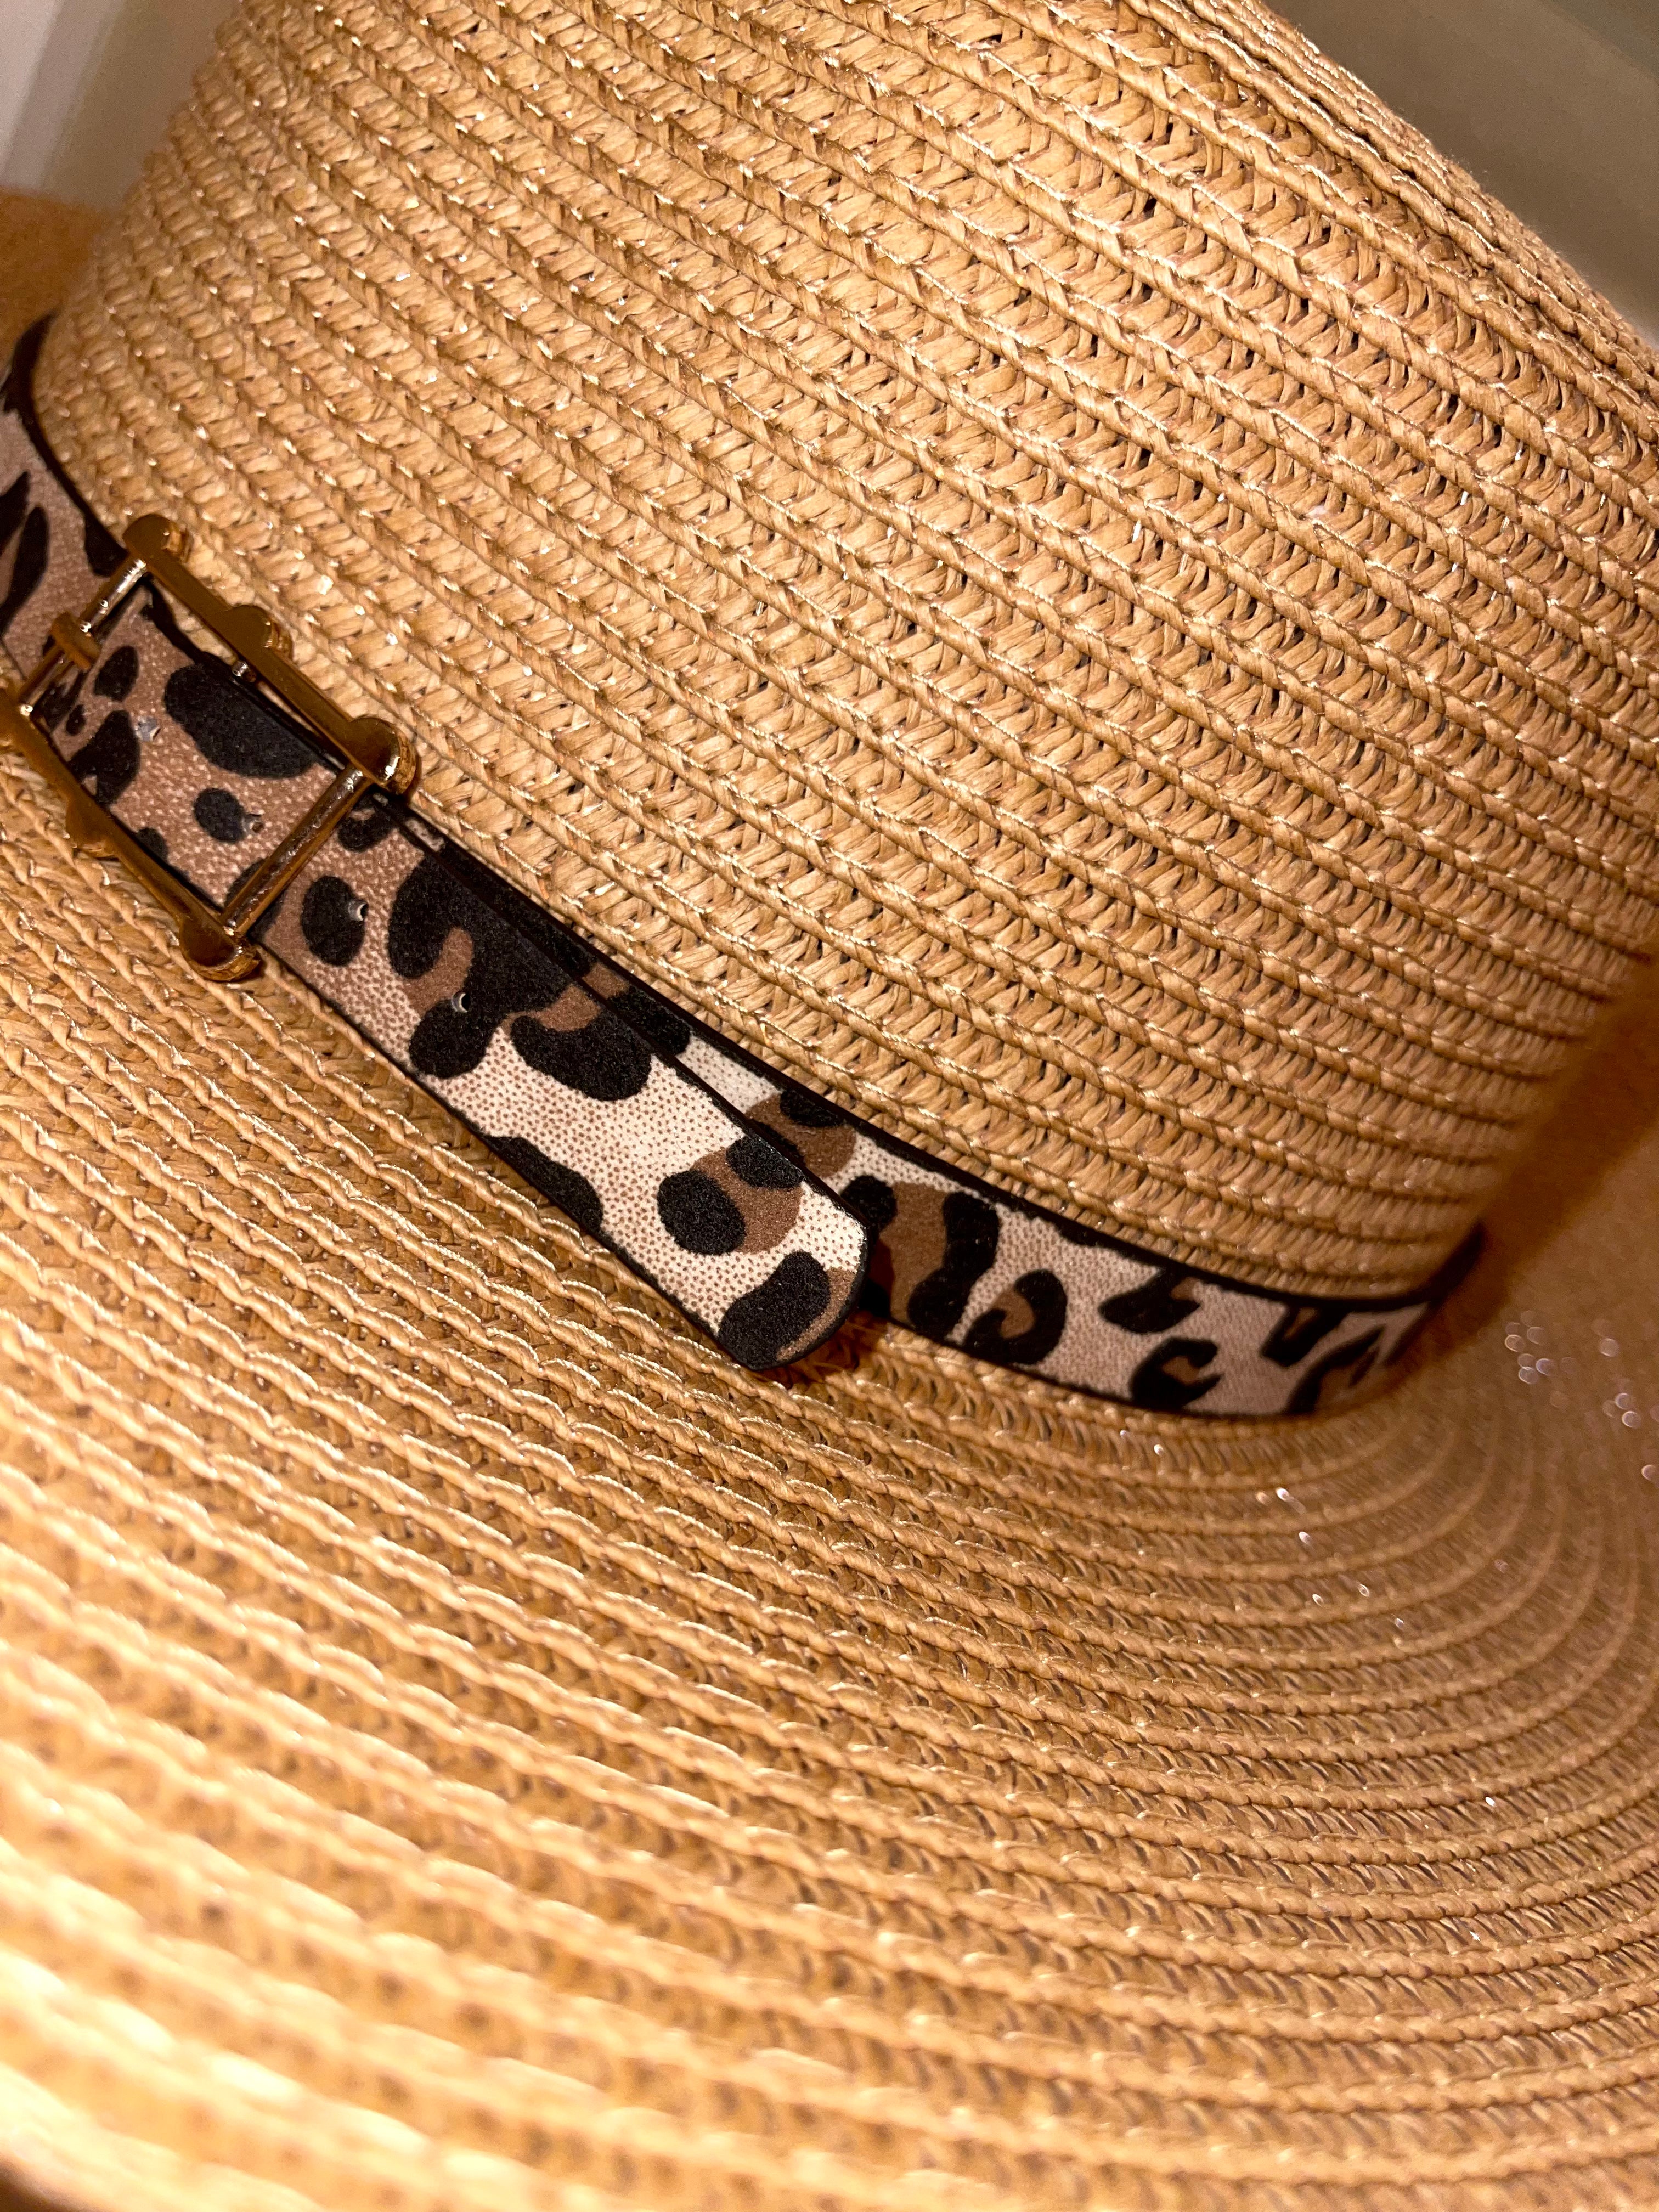 Brown Panama Brim Hat